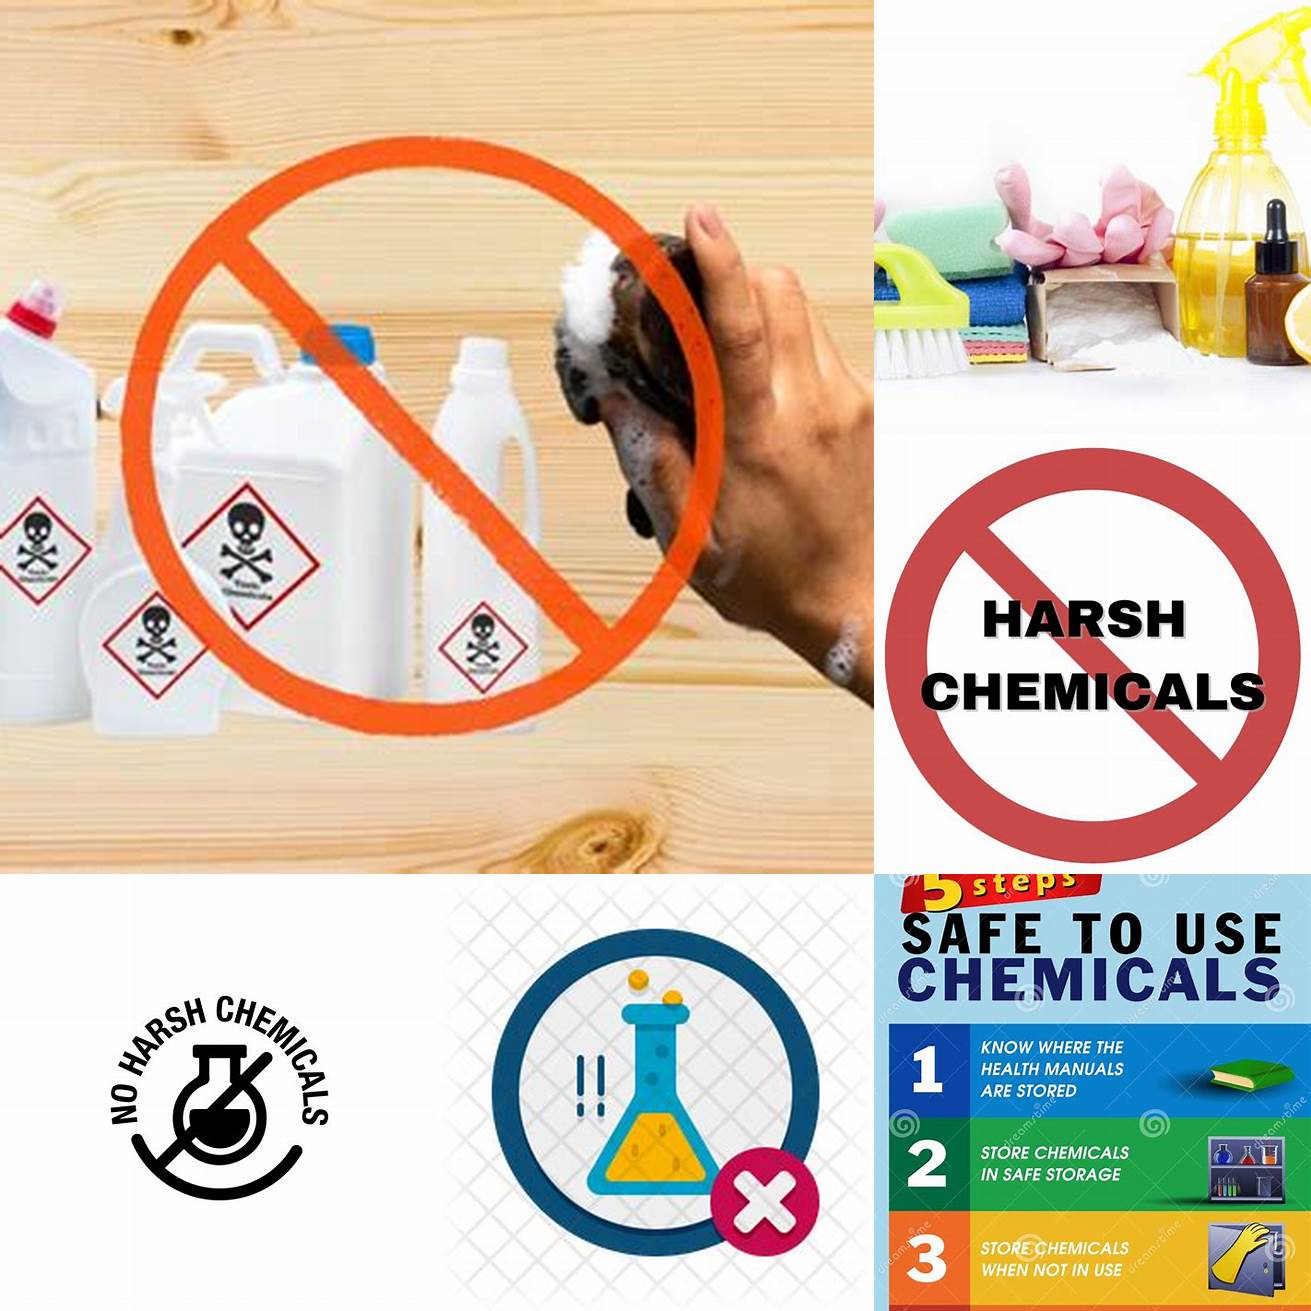 Avoid using harsh chemicals or abrasives